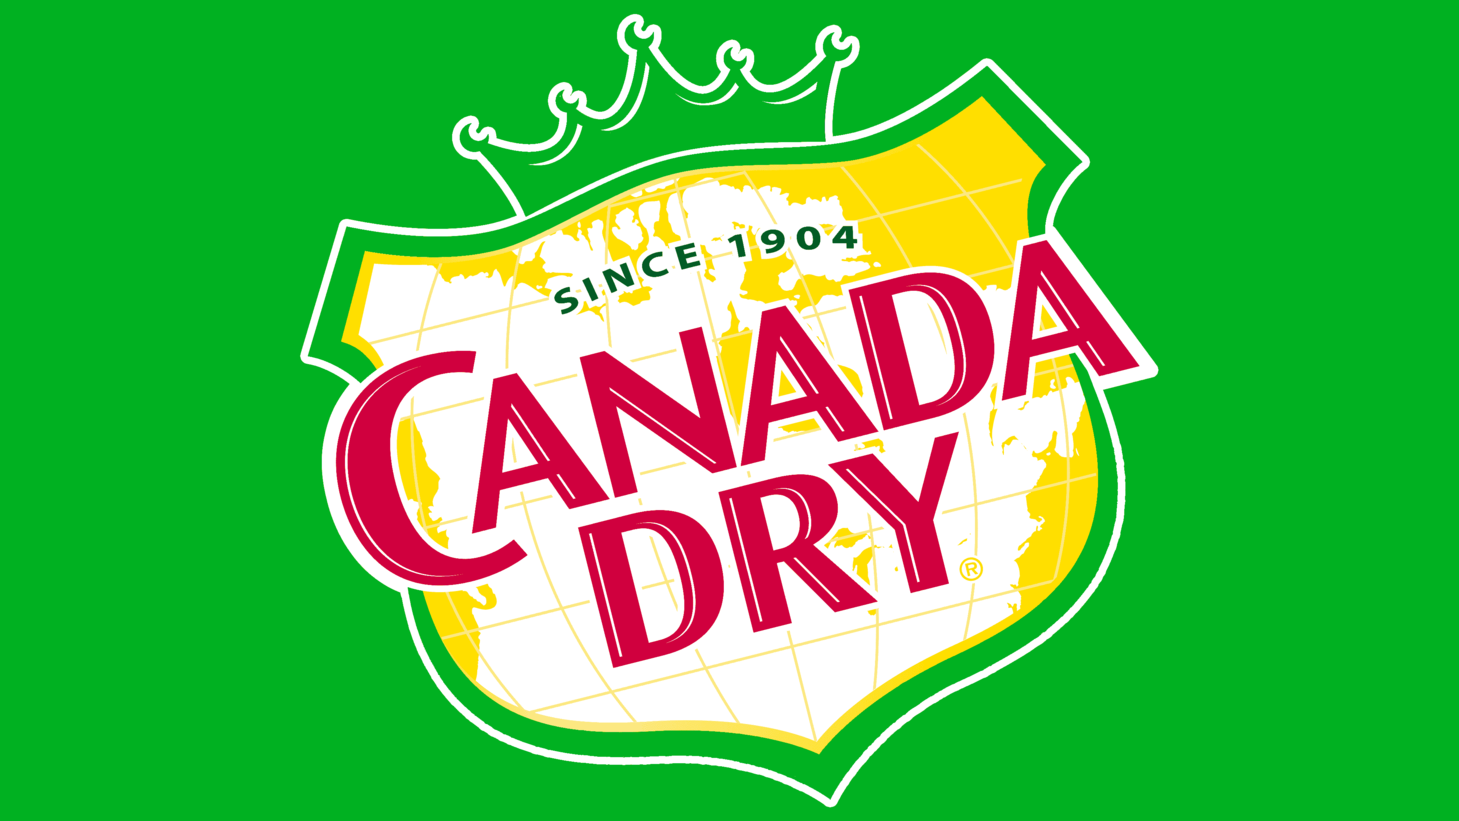 Canada dry symbol